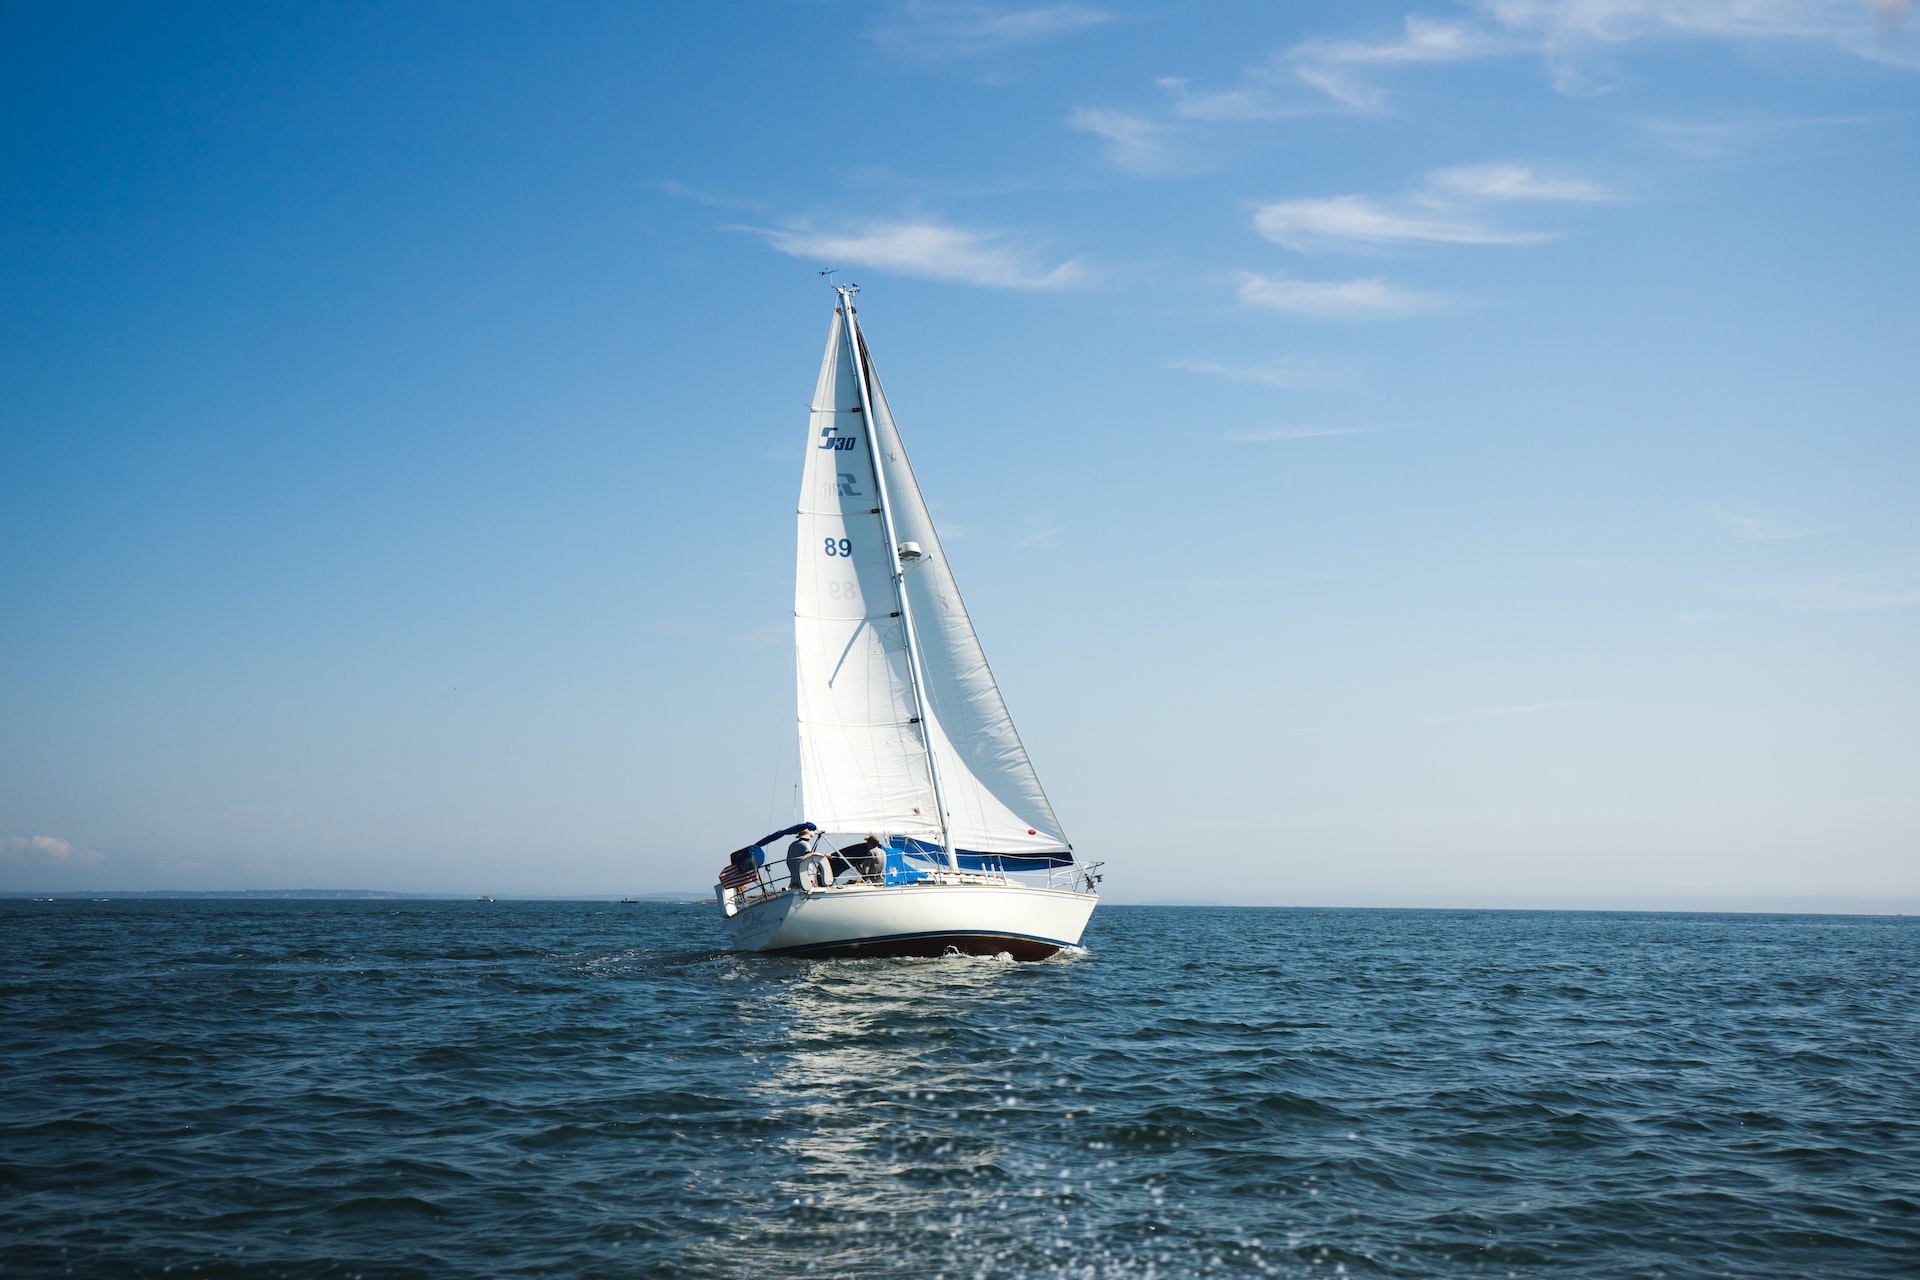 Guida alla scelta di una barca a vela per principianti